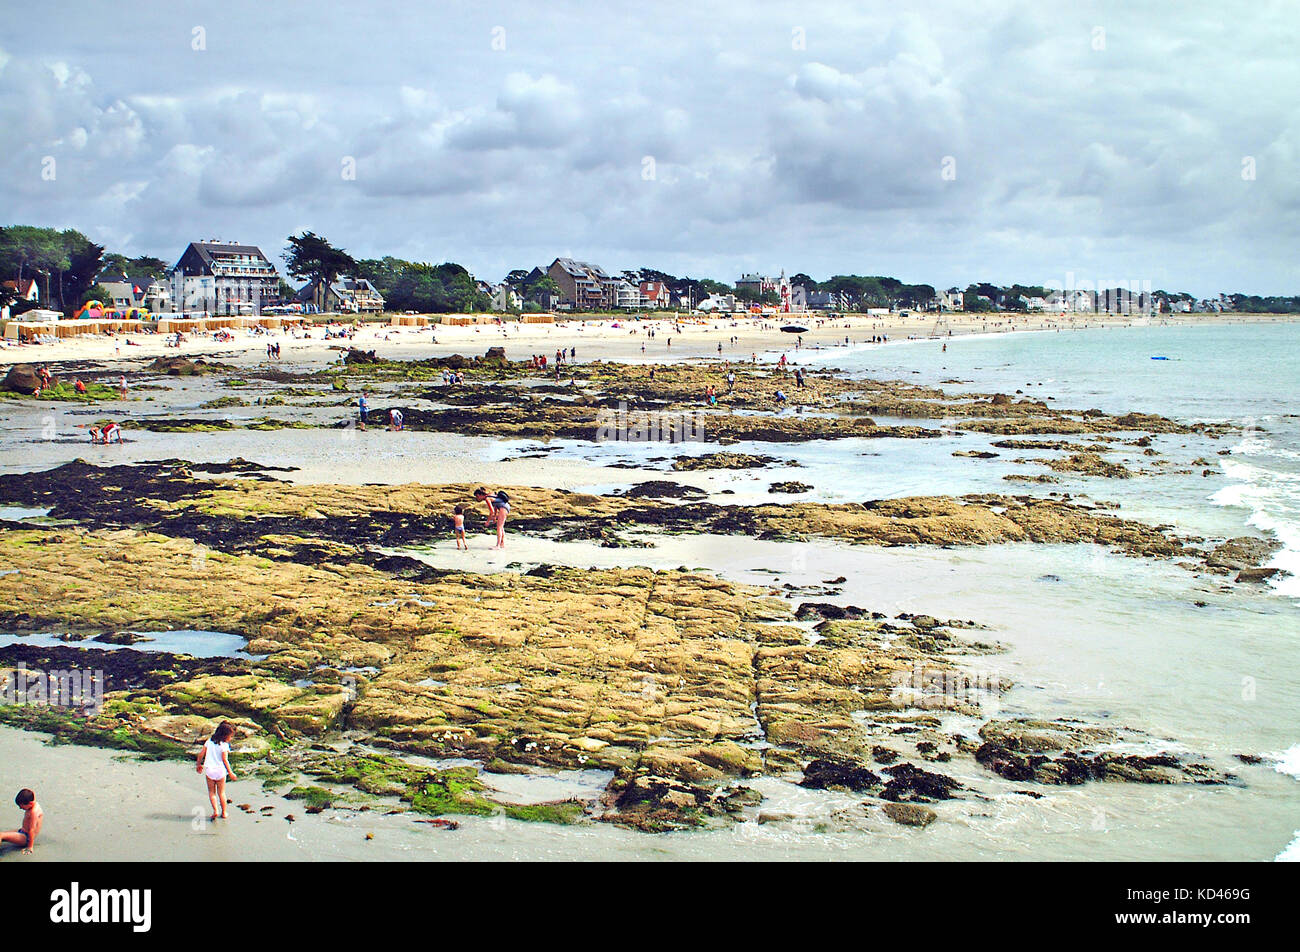 Carnac beach, France Stock Photo